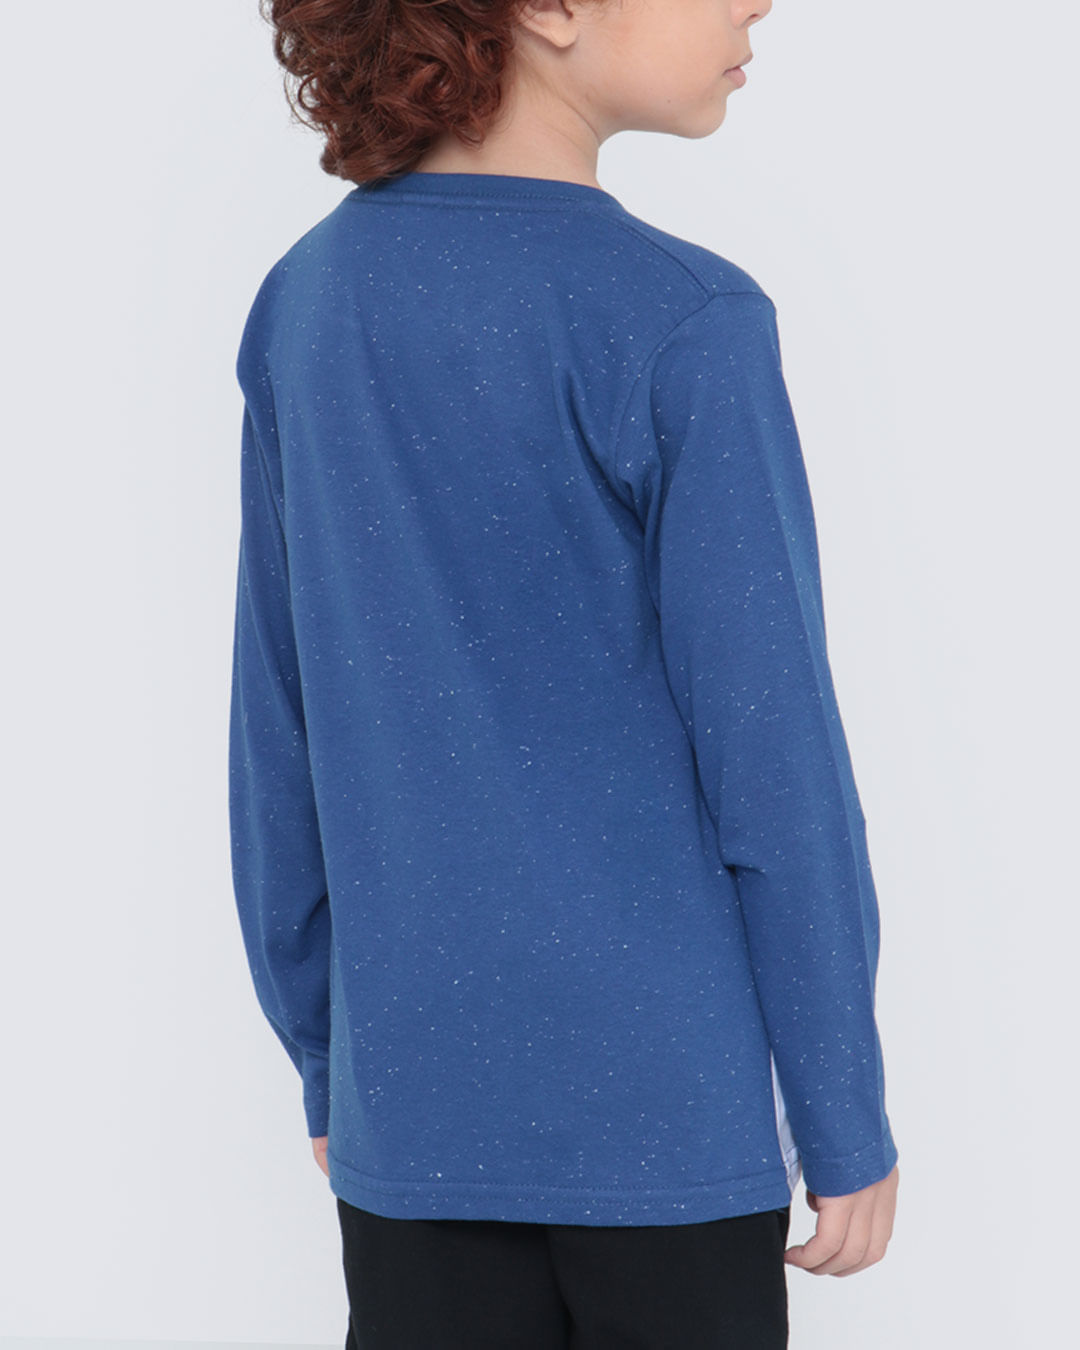 Camiseta-27988-Ml-M410-Game---Azul-Medio